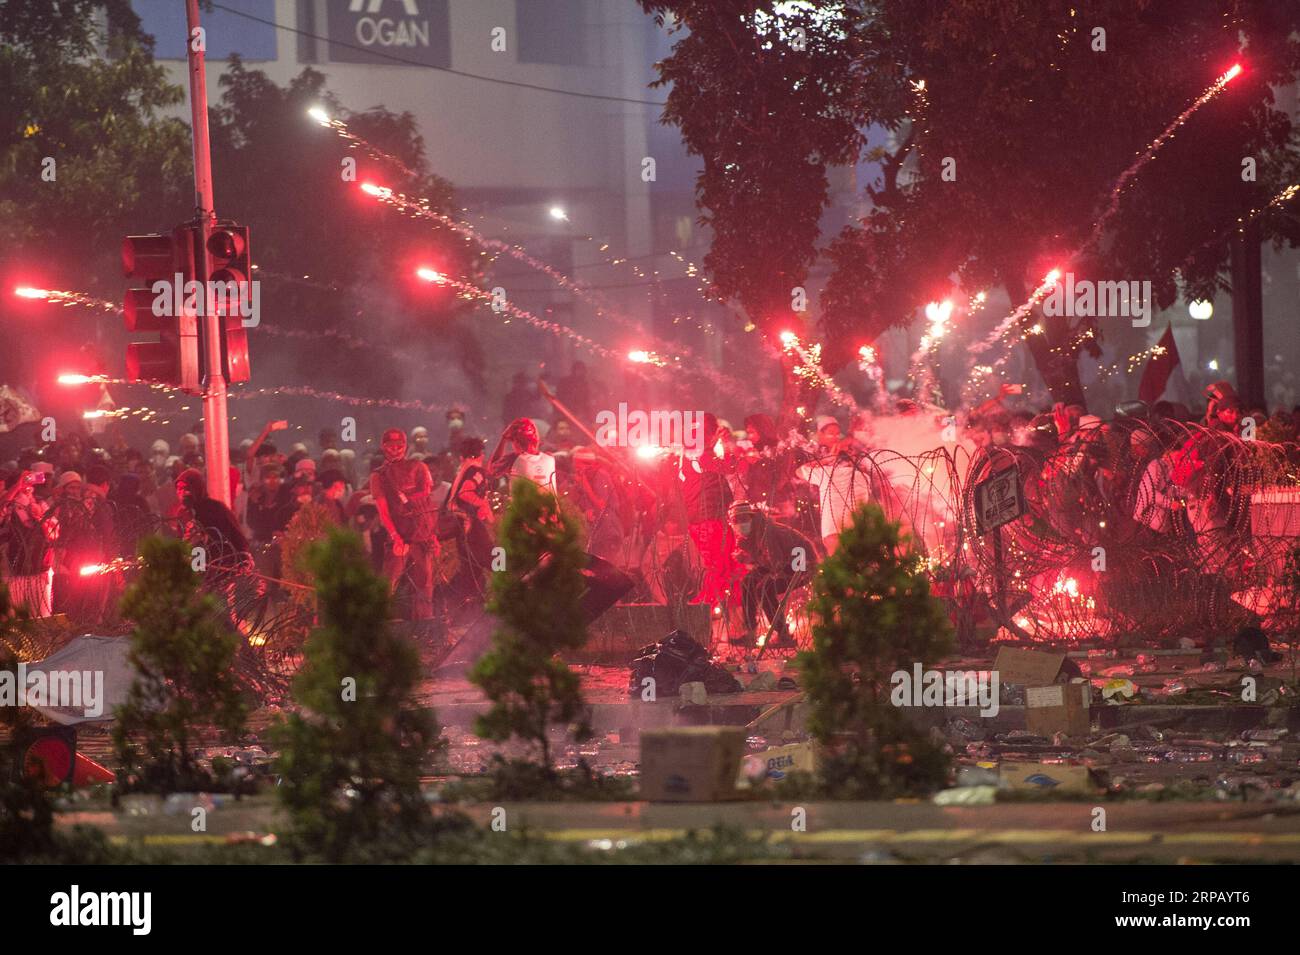 (190522) -- JAKARTA, 22. Mai 2019 -- Demonstranten zünden am 22. Mai 2019 ein Feuerwerk während eines Zusammenstoßes vor dem Gebäude des Wahlaufsichtsrats in Jakarta, Indonesien. Die Polizei von Jakarta hat 257 Randalierer verhaftet, die an gewaltsamen Wahldemonstrationen beteiligt waren, und es wird erwartet, dass weitere verhaftet werden, da die Demonstrationen noch andauern, sagte Polizeisprecher Argo Yuwono von Jakarta am Mittwoch hier. ) INDONESIEN-JAKARTA-WAHLGEWALTDEMONSTRATION VerixSanovri PUBLICATIONxNOTxINxCHN Stockfoto